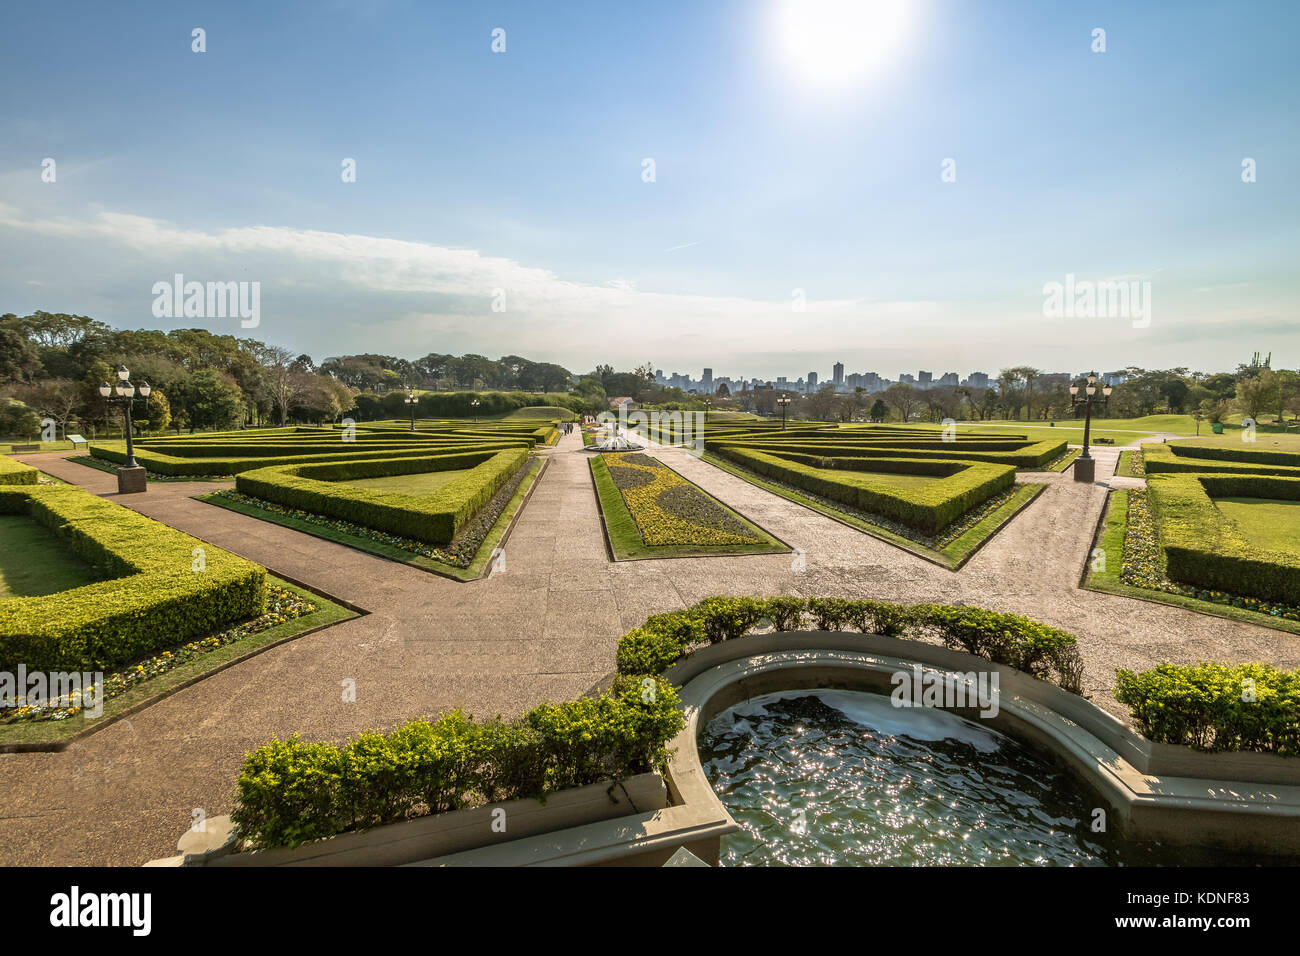 French Gardens of Curitiba Botanical Garden - Curitiba, Parana, Brazil Stock Photo